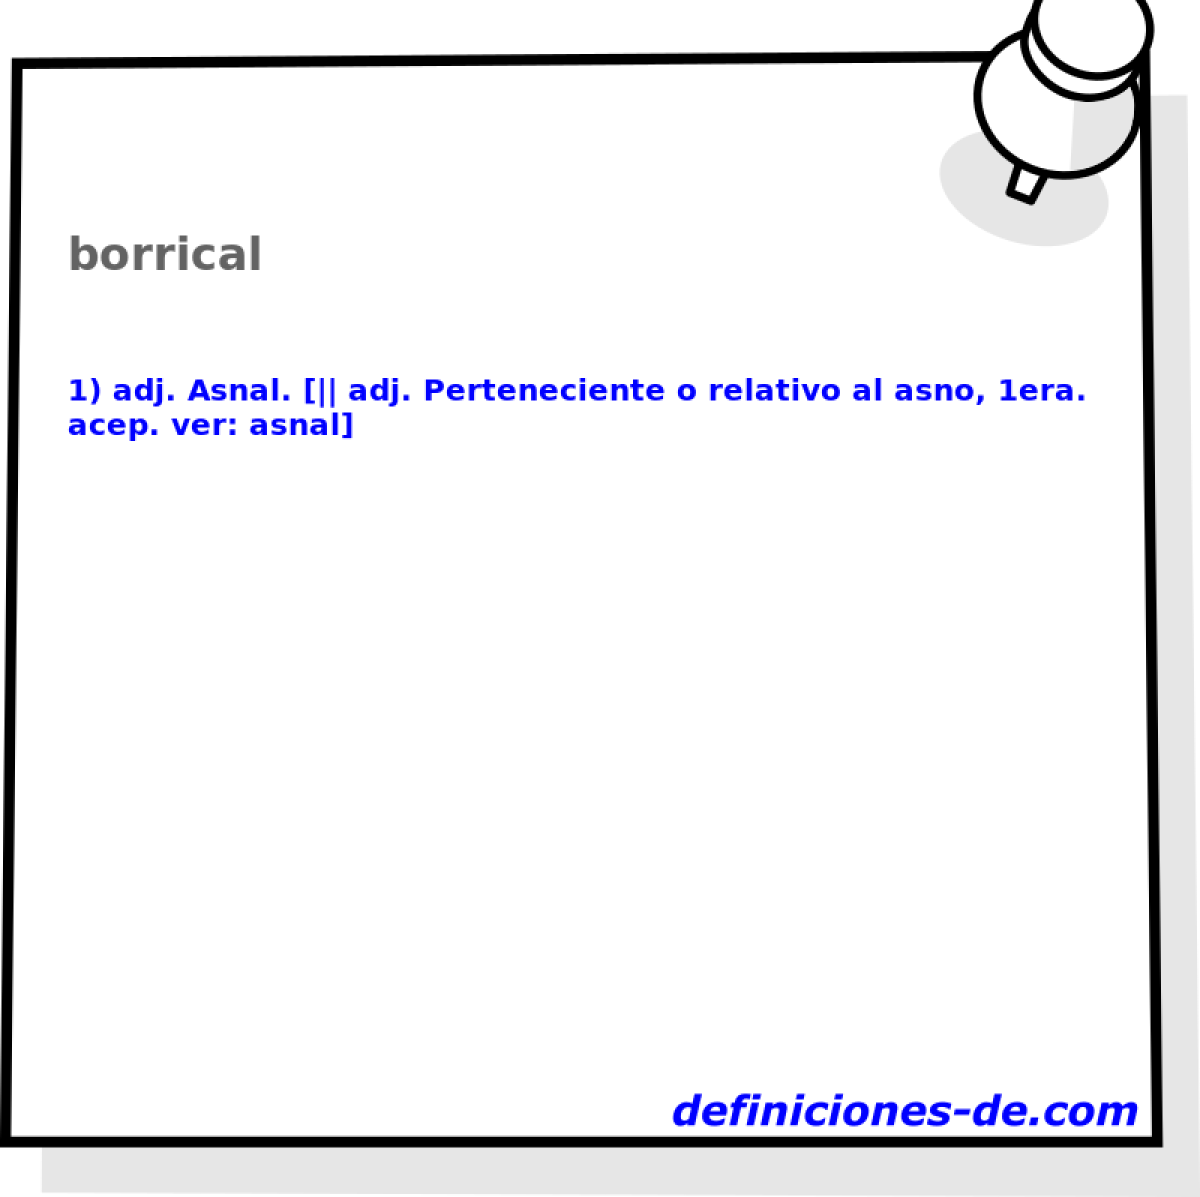 borrical 